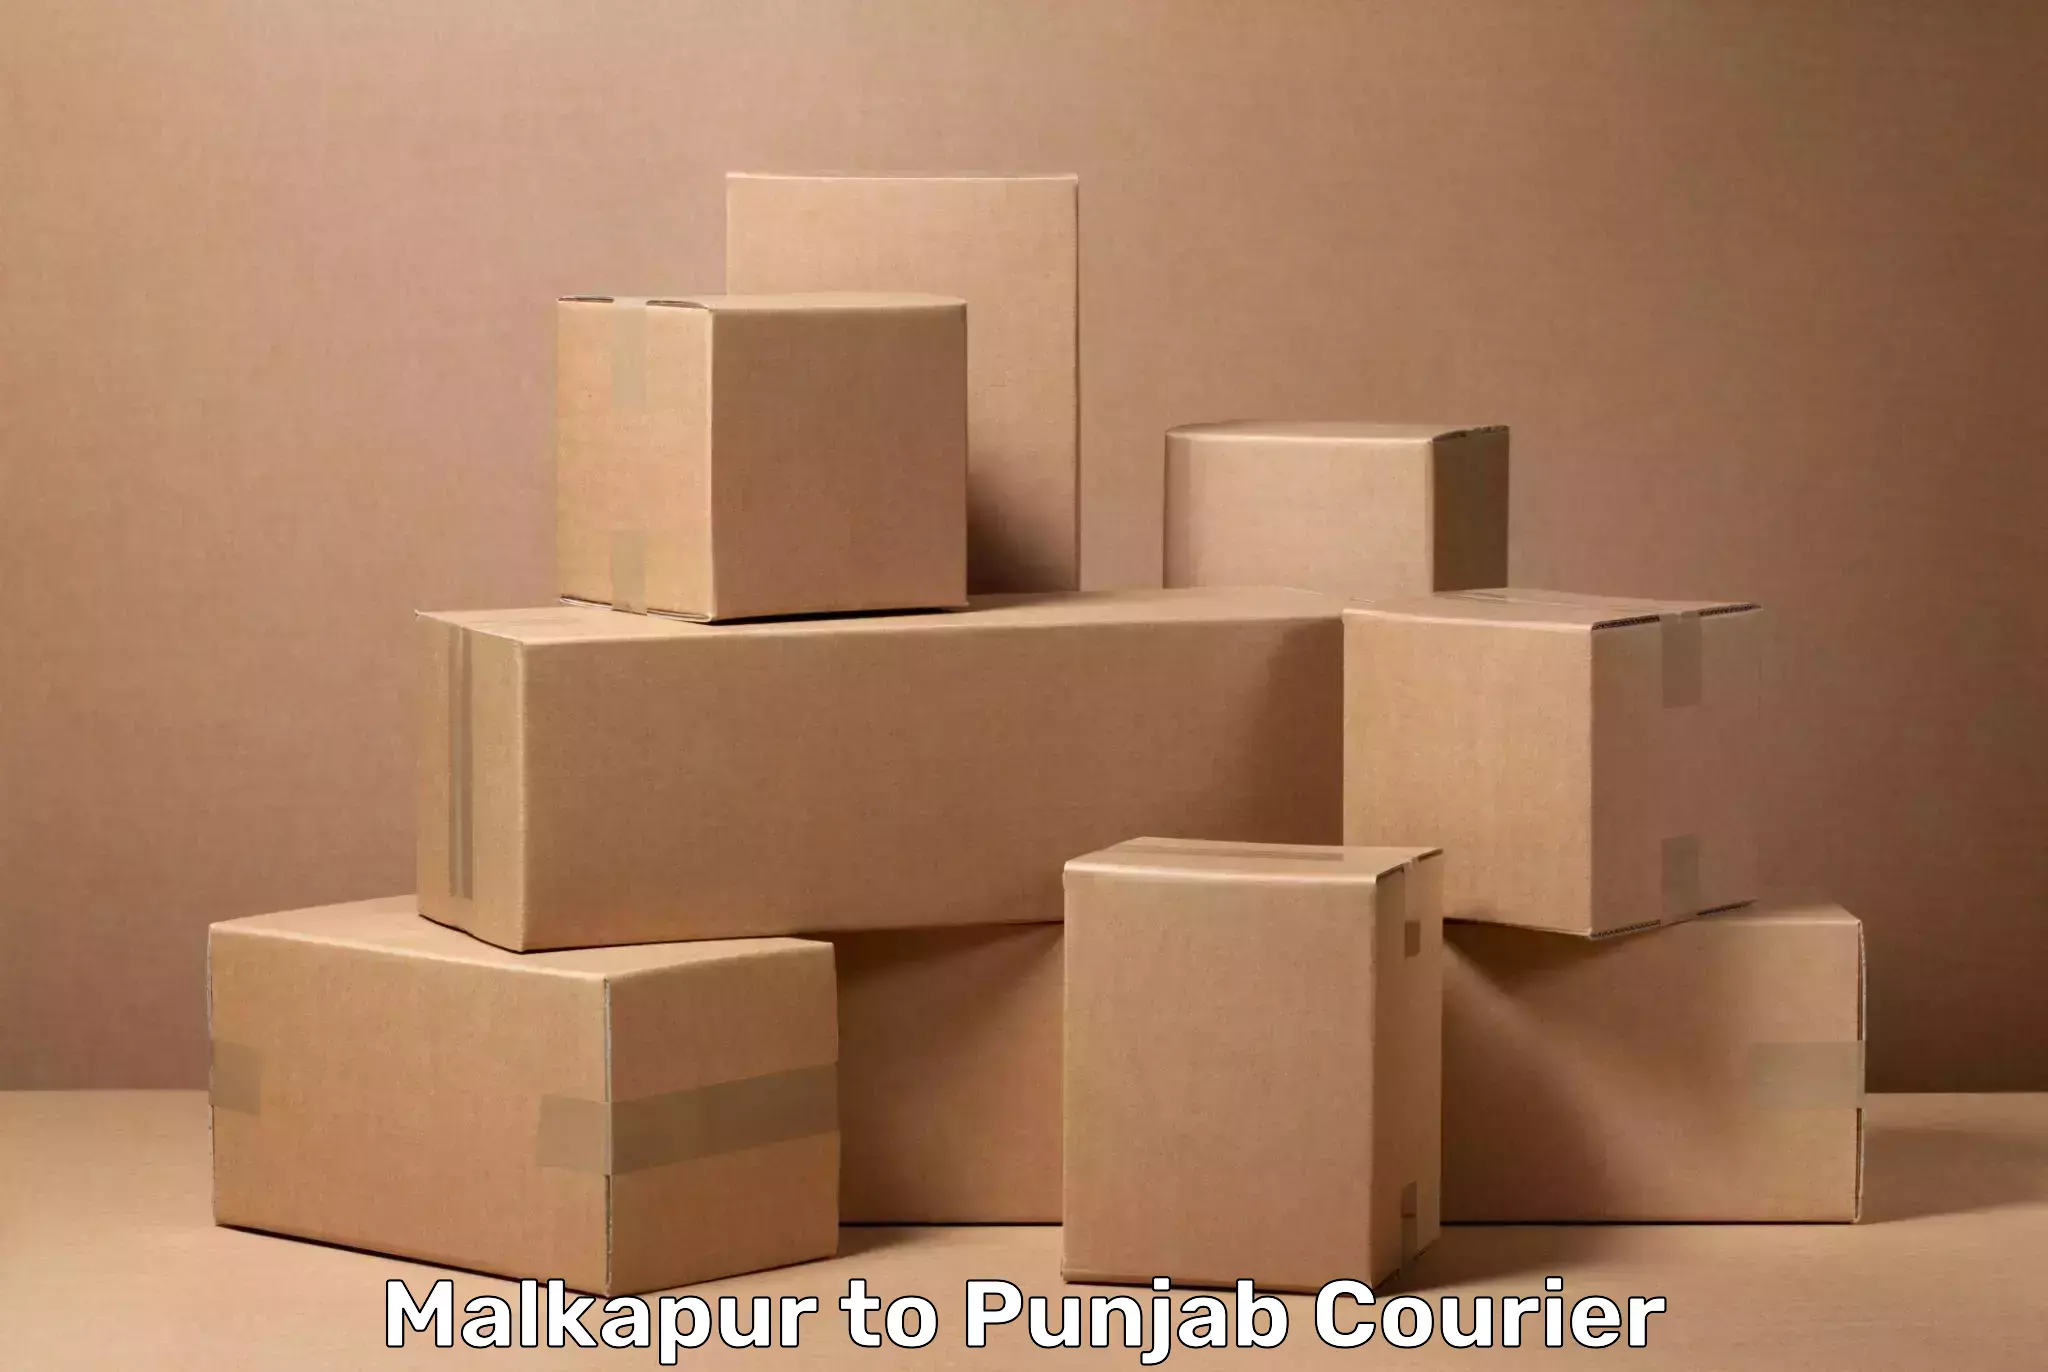 Baggage shipping service Malkapur to Faridkot